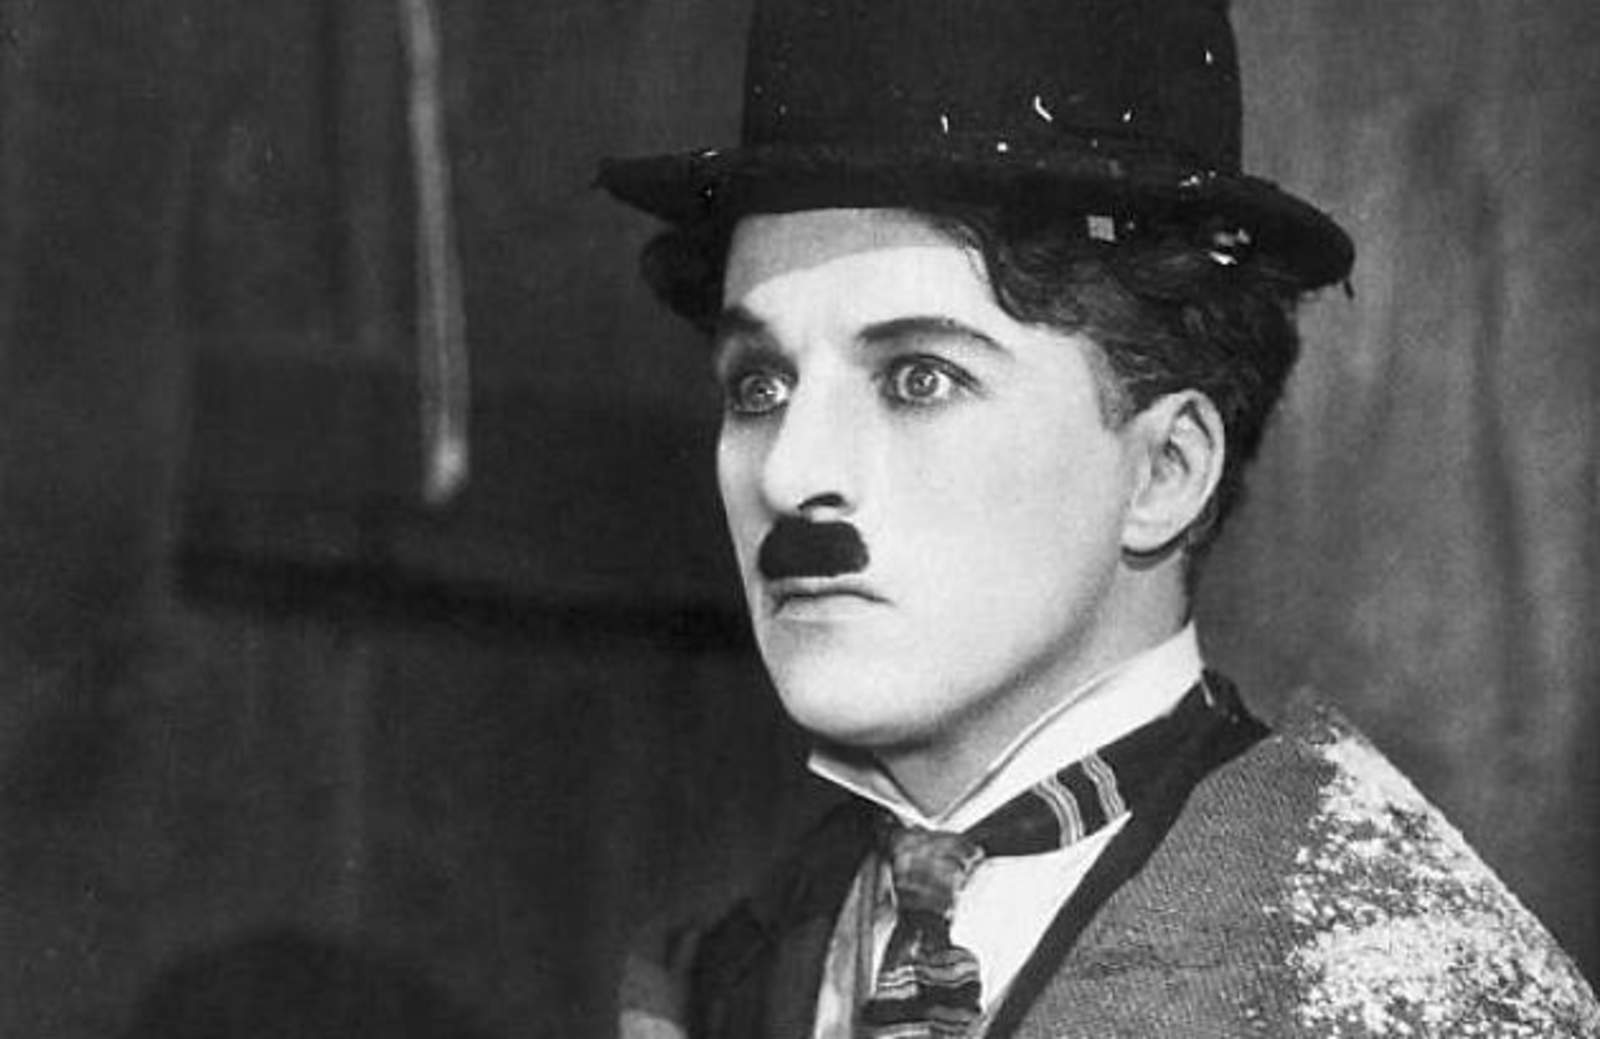 Chaplin perfeccionó un estilo personal de interpretación, derivado del payaso de circo y del mimo, al combinar la elegancia acrobática, la expresividad del gesto y la elocuencia facial, con un sentido del ritmo impecable. (ESPECIAL)